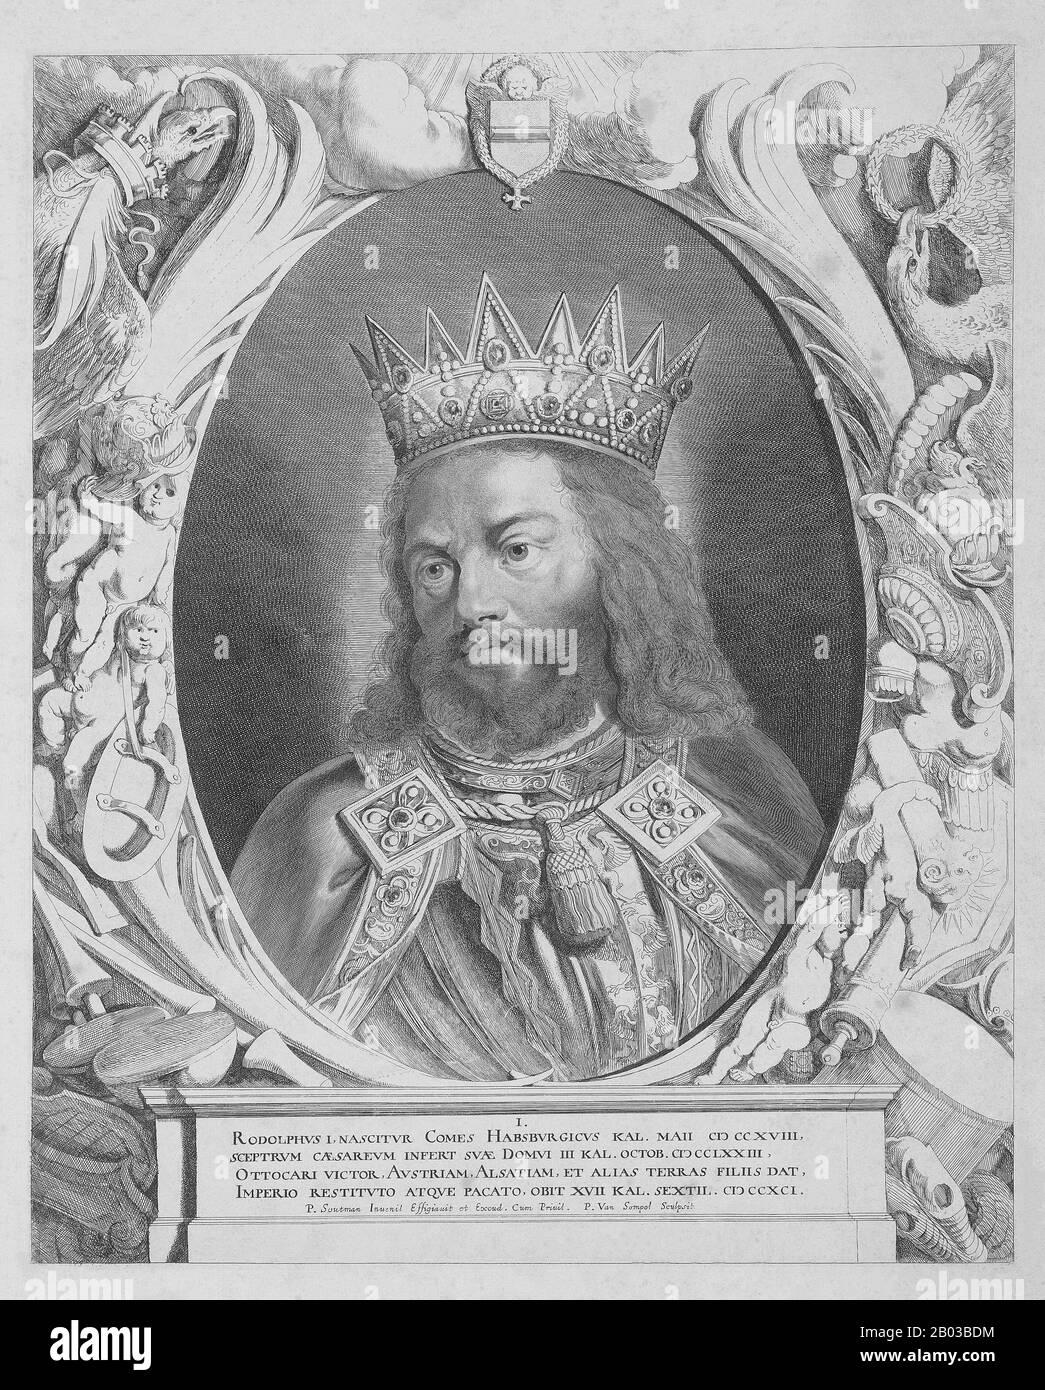 Rudolf I. (1218-1291), auch bekannt als Rudolf von Habsburg, war der Sohn des Graf Albert IV. Von Habsburg und wurde nach dem Tod seines Vaters 1239 Graf. Sein Pate war Kaiser Friedrich II., dem er häufige Gerichtsbesuche abstattete. Rudolf beendete das Große Interregnum, das das Heilige Römische Reich nach dem Tod Friedrichs verhüllt hatte, als er 1273 zum König von Deutschland gewählt wurde. Stockfoto